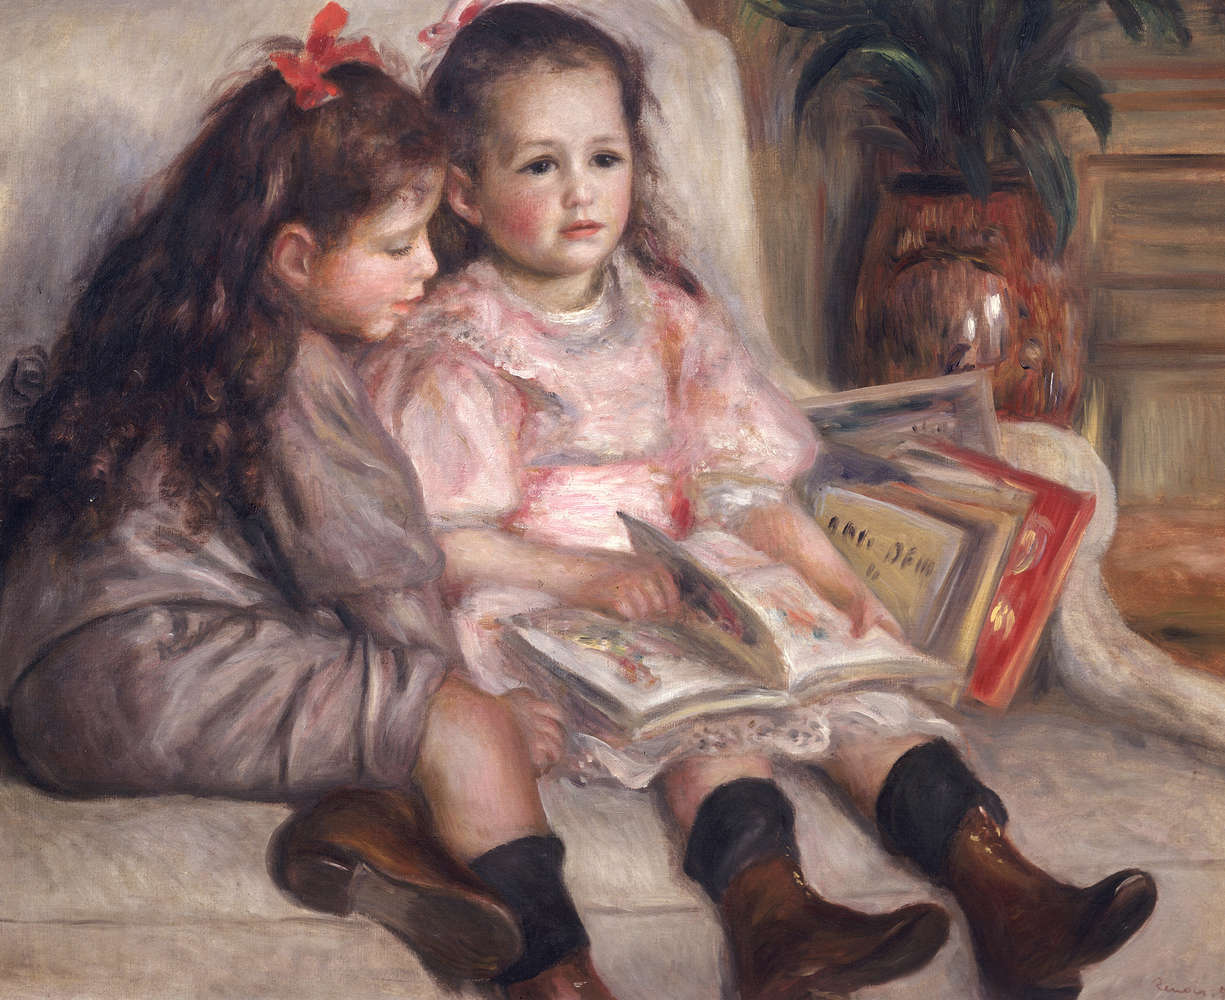             Fototapete "Porträts von Kinder" von Pierre Auguste Renoir
        